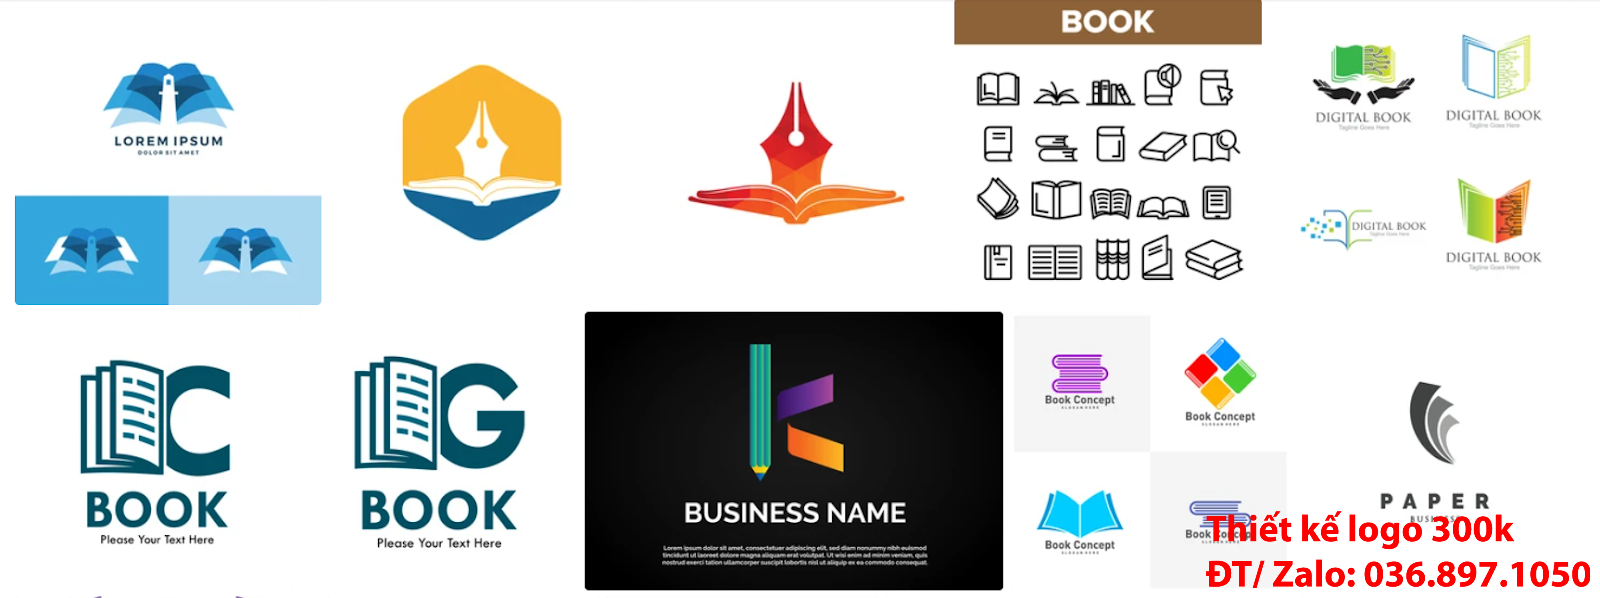 Công ty Tạo mẫu logo nhà sách sang trọng khác biệt đẹp online uy tín chuyên nghiệp tại Hà Nội